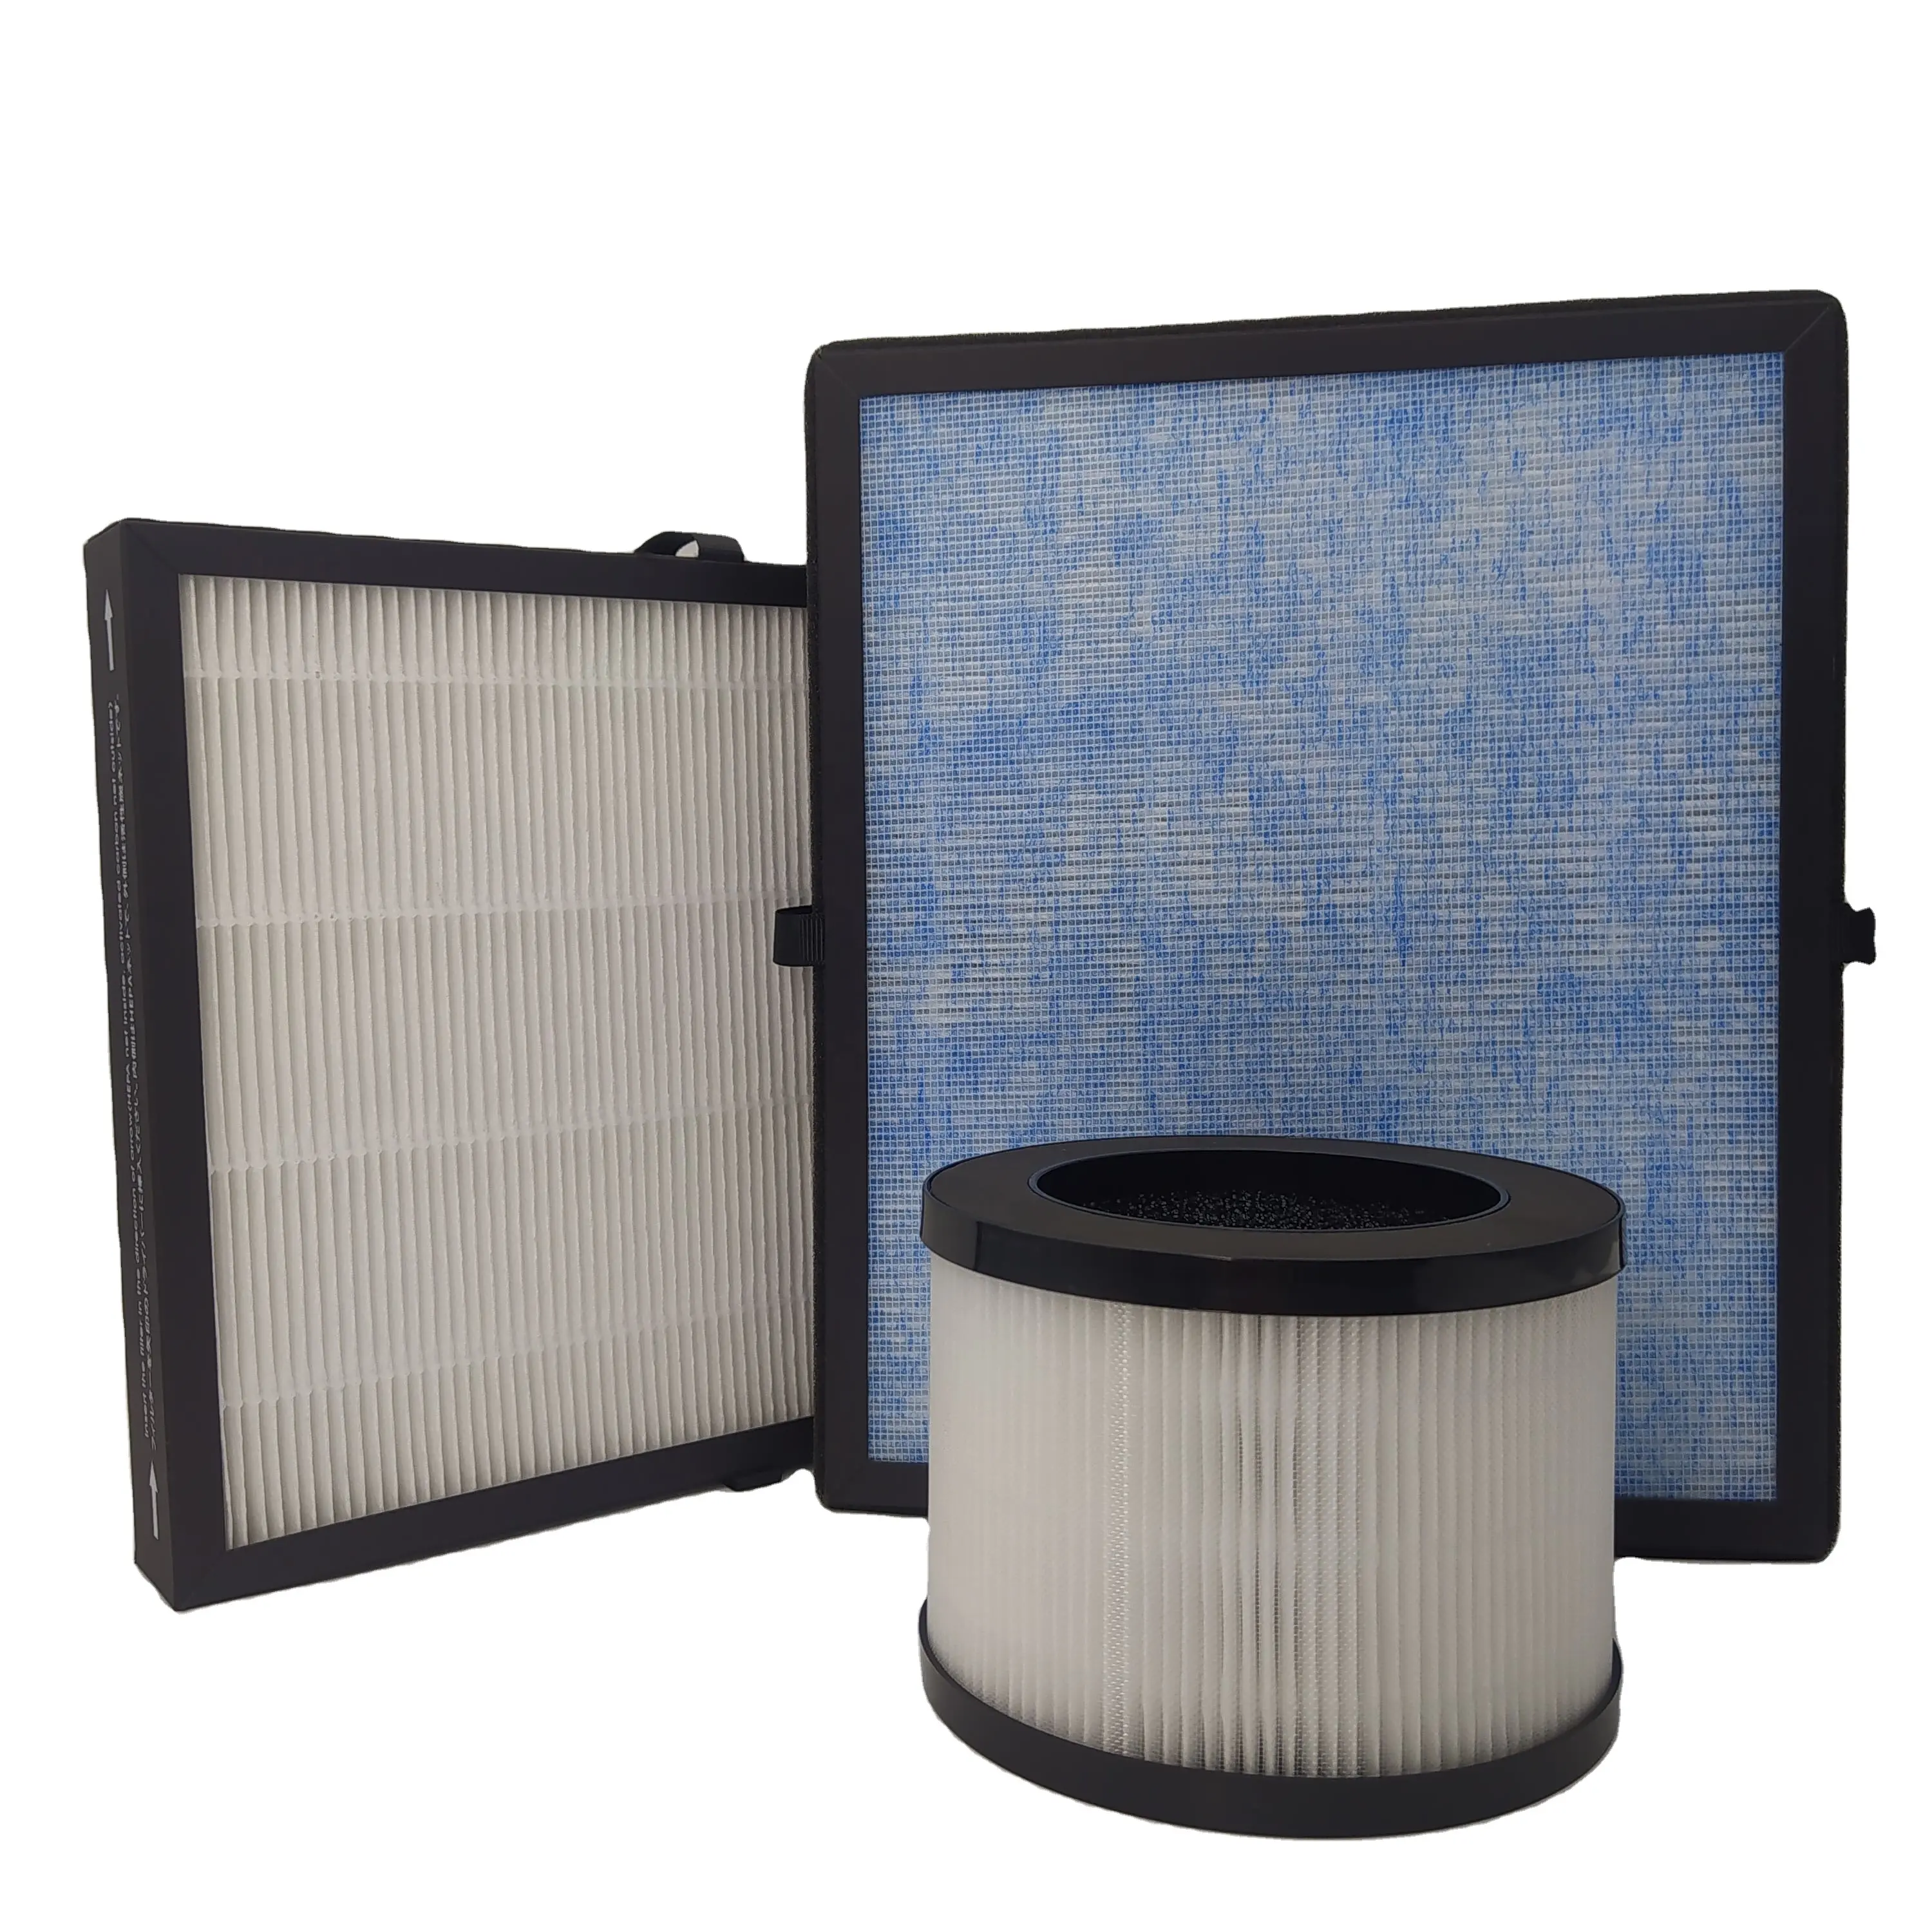 OEM filtre özel üretici gerçek H13 hava temizleyici parçaları